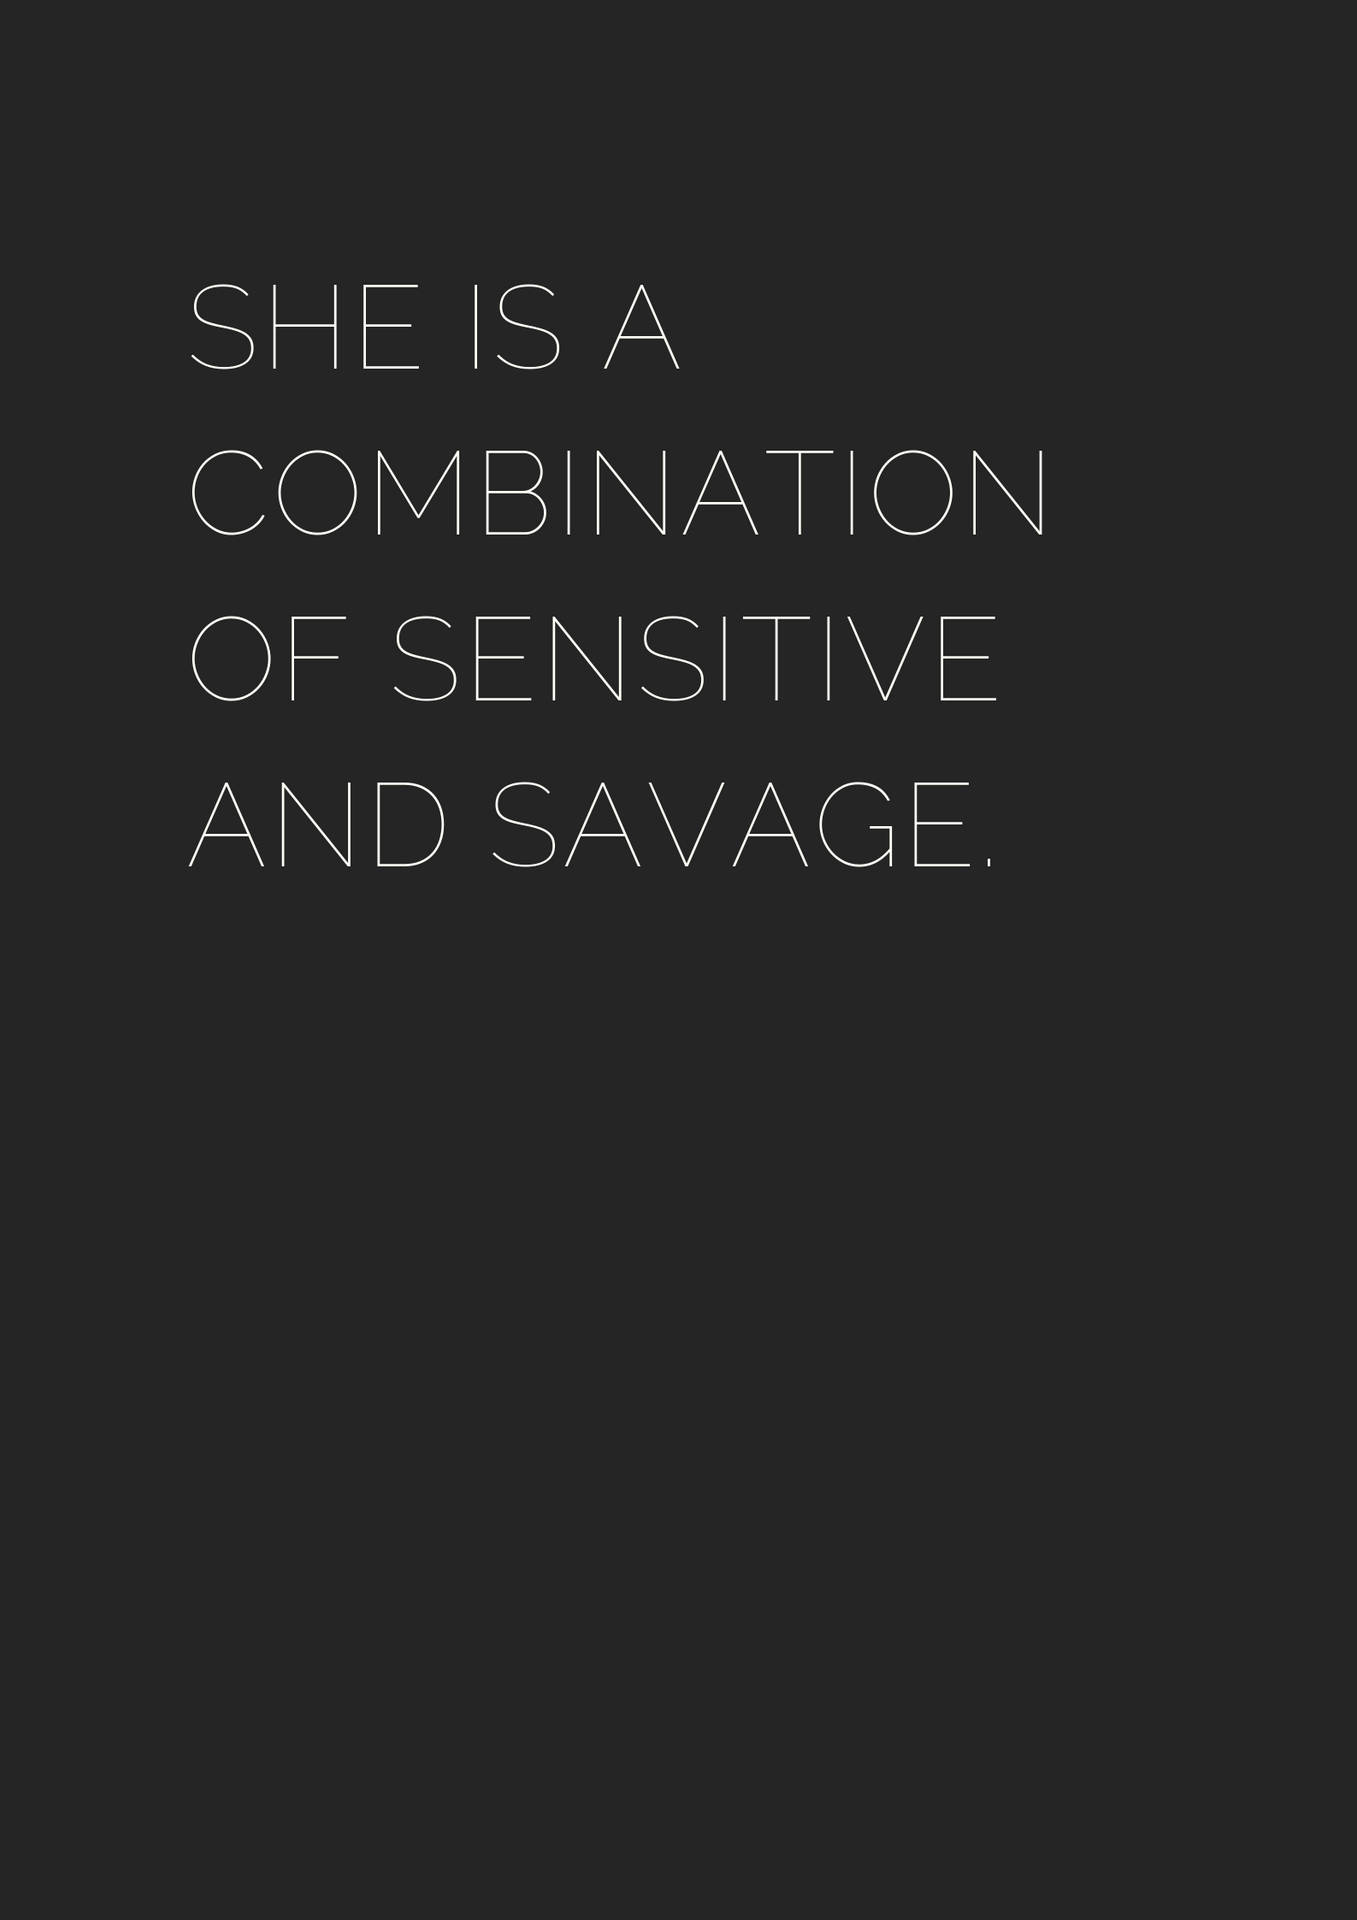 Savagecombination Sensitive: Vilt Kombinerat Känsligt. Wallpaper